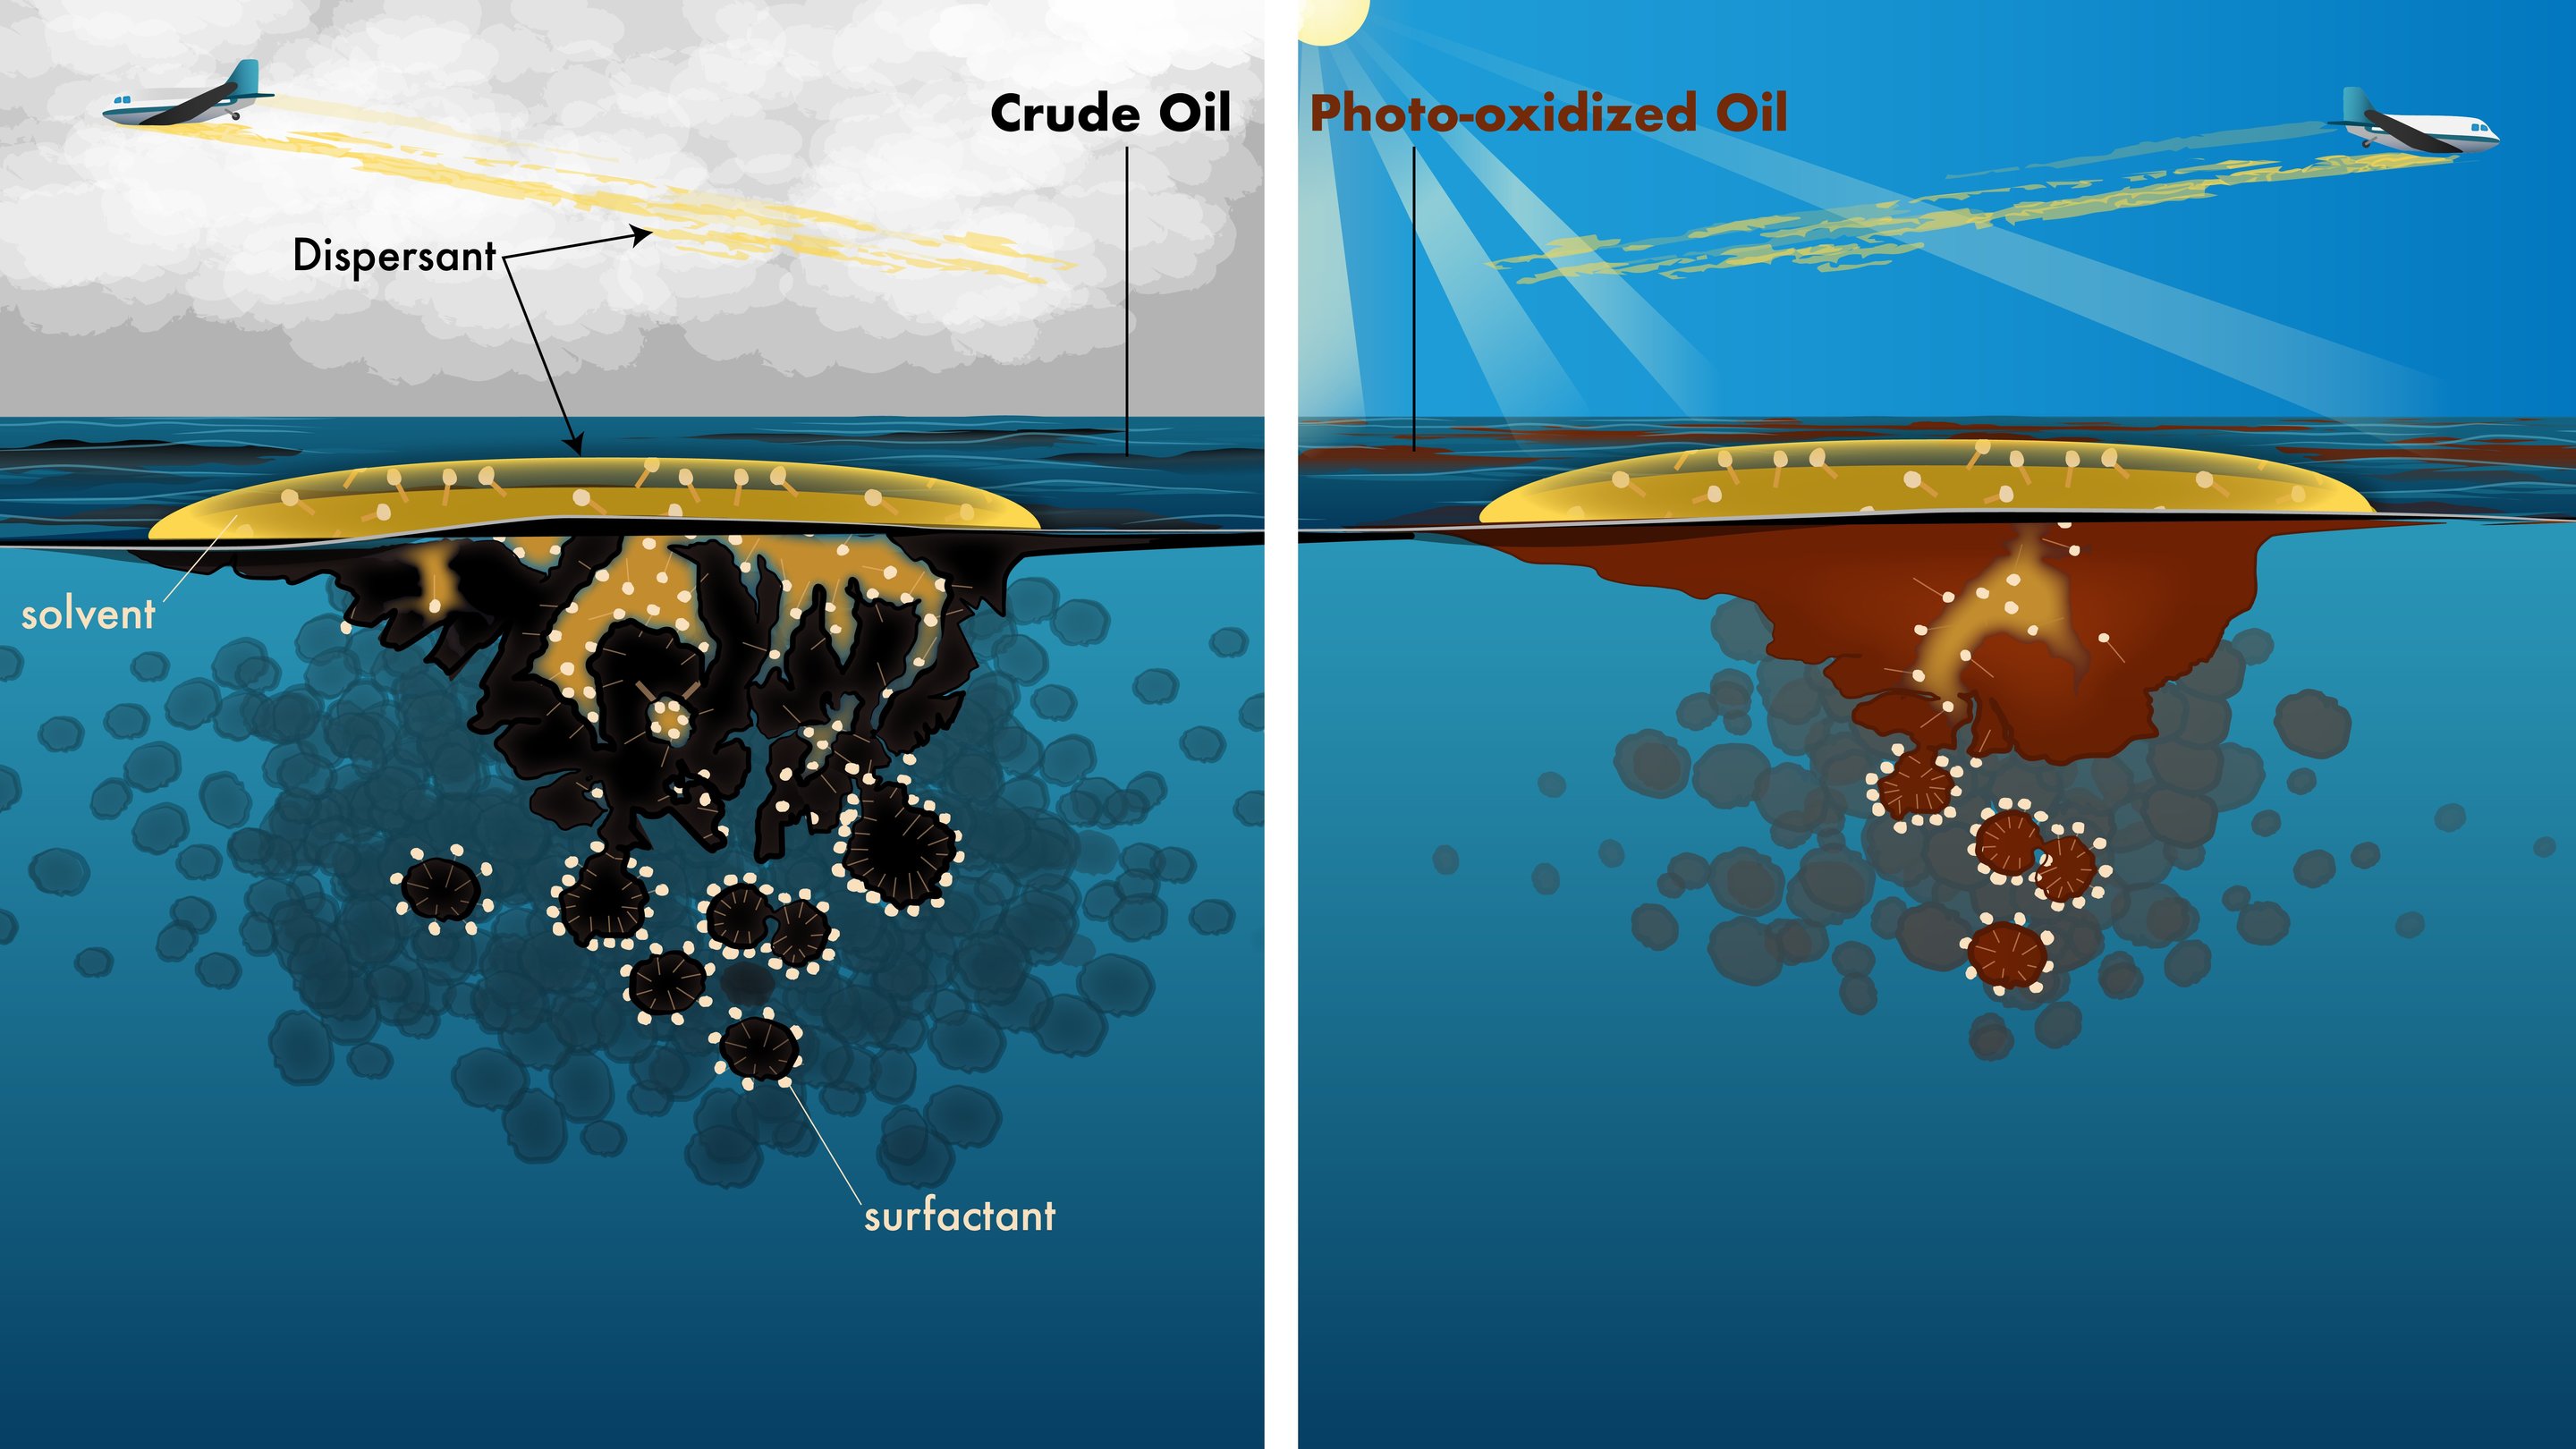 Rxchemical oil spil dispersant